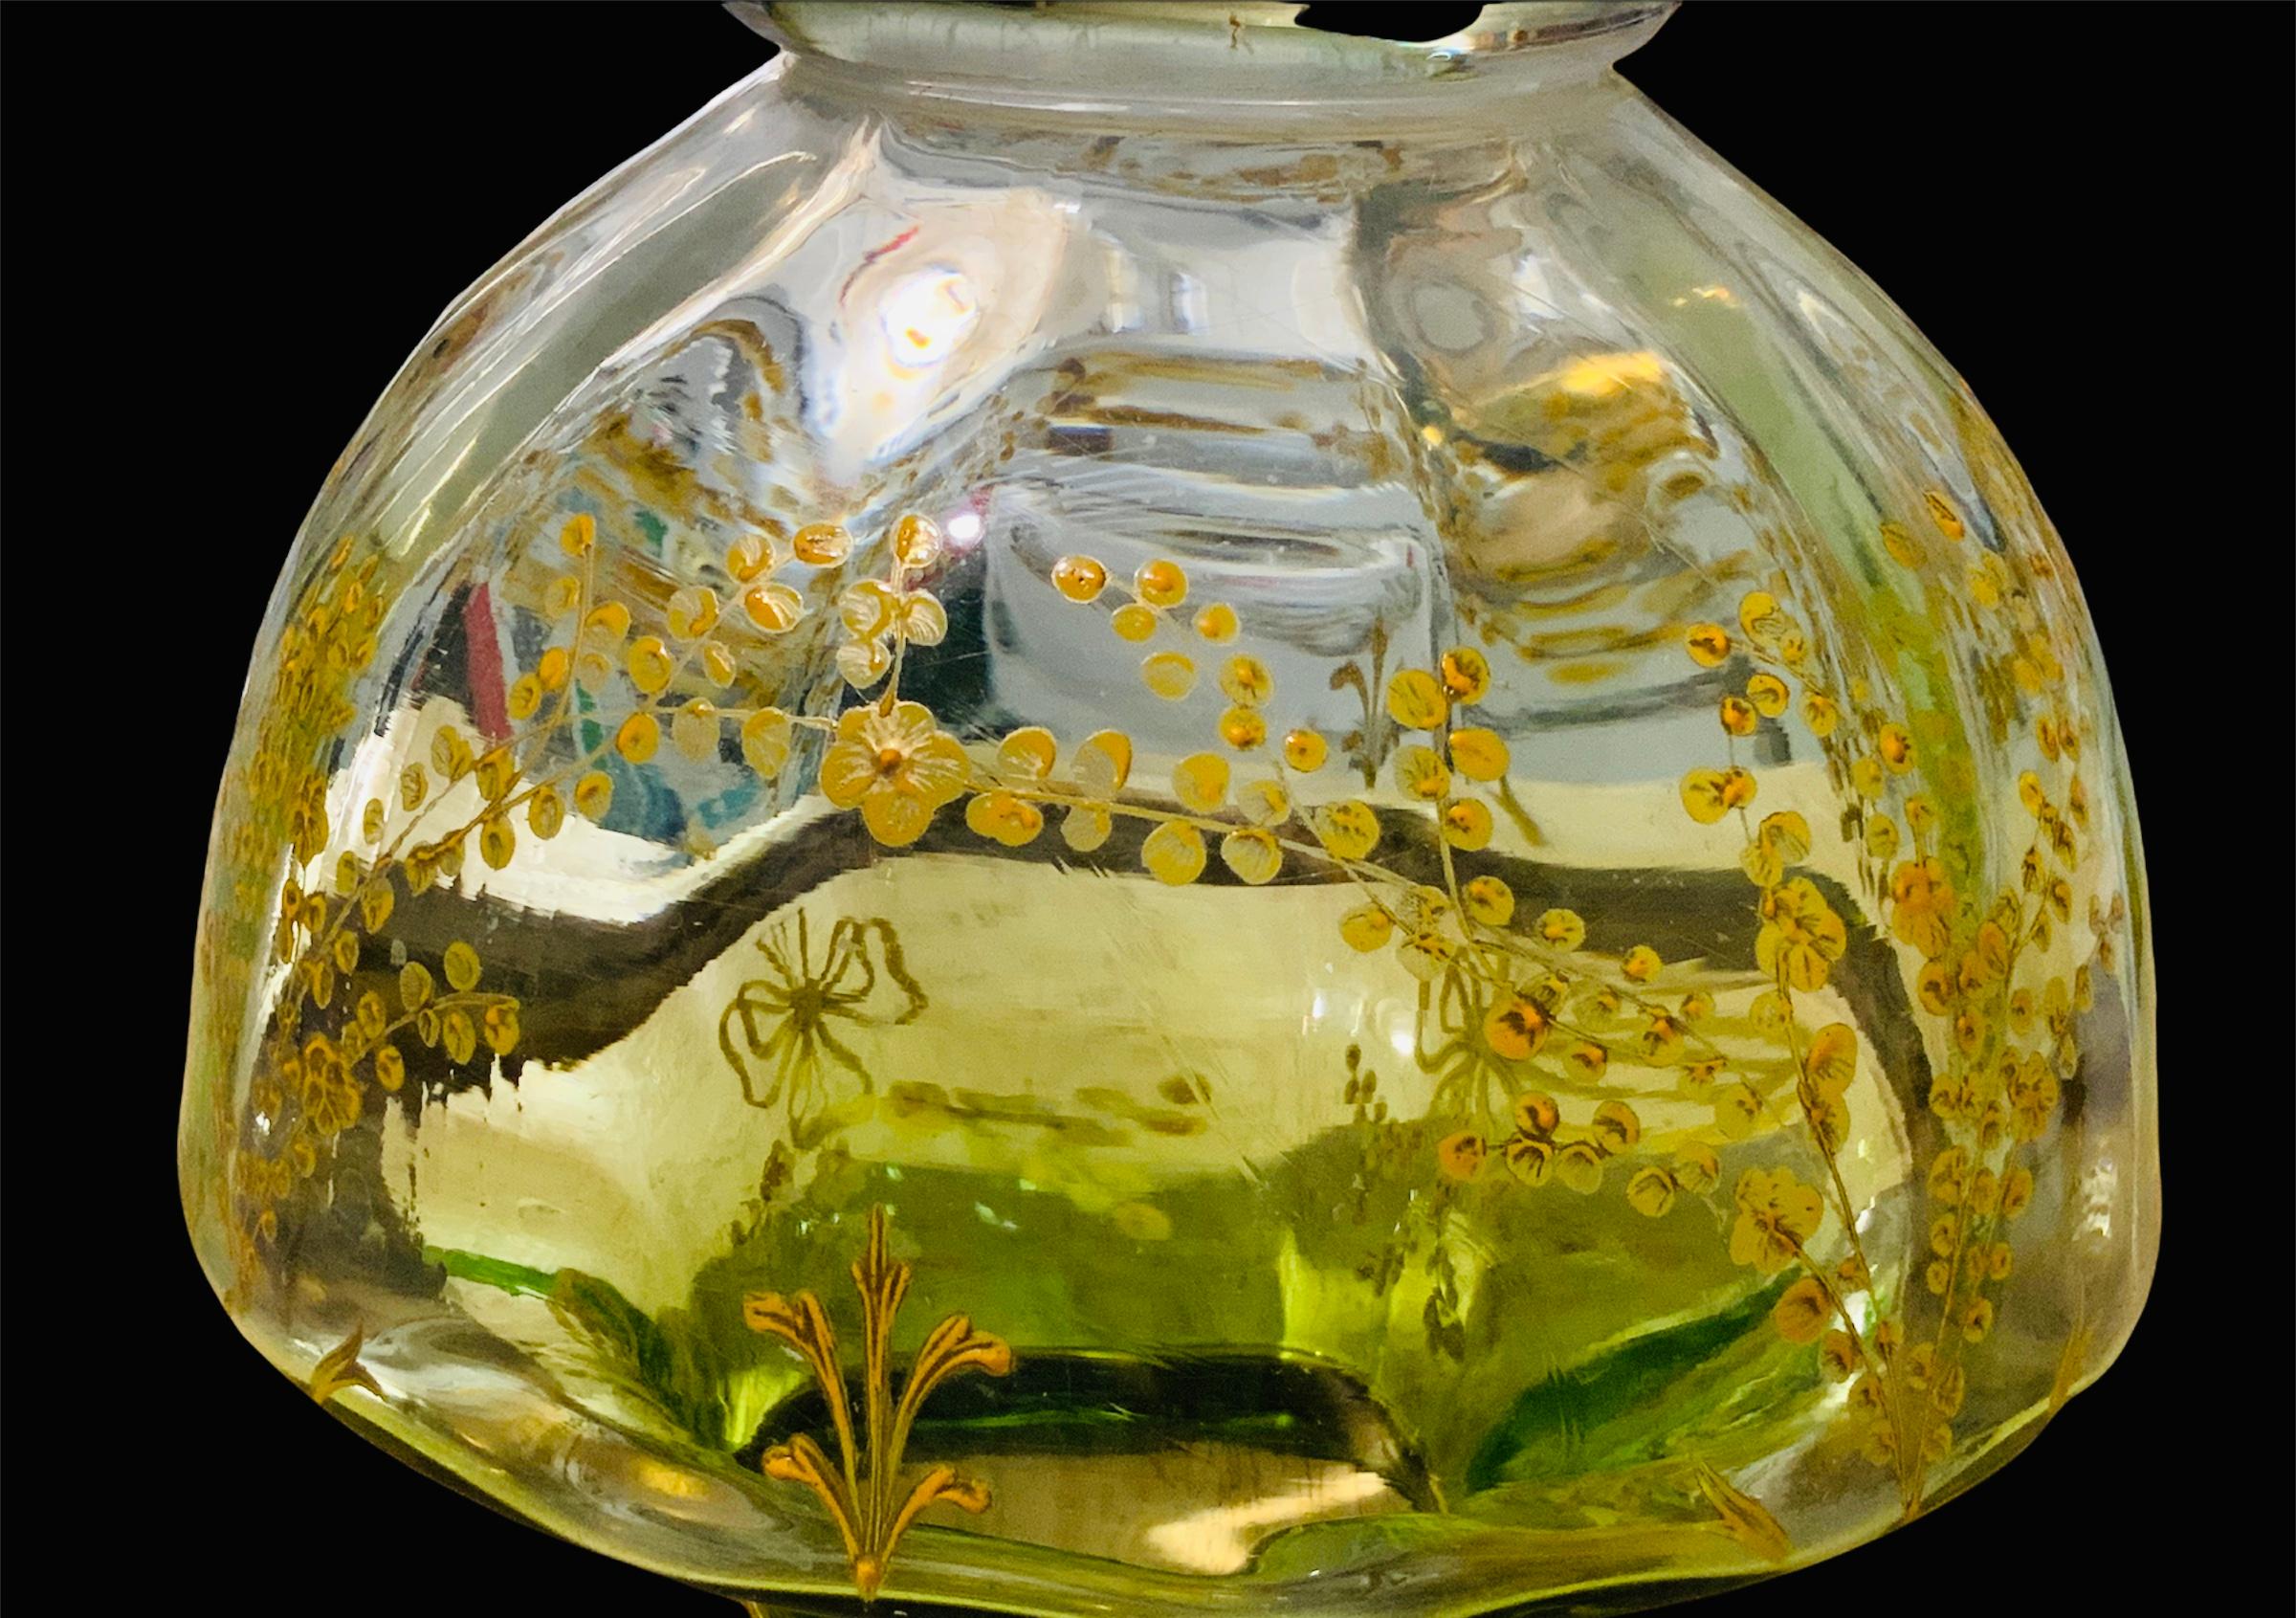 Dies ist ein Moser hellgrüne Farbe und vergoldetes Glas Mittelstück breite Urne geformt Vase. Es ist mit goldenen und gelben handgemalten 